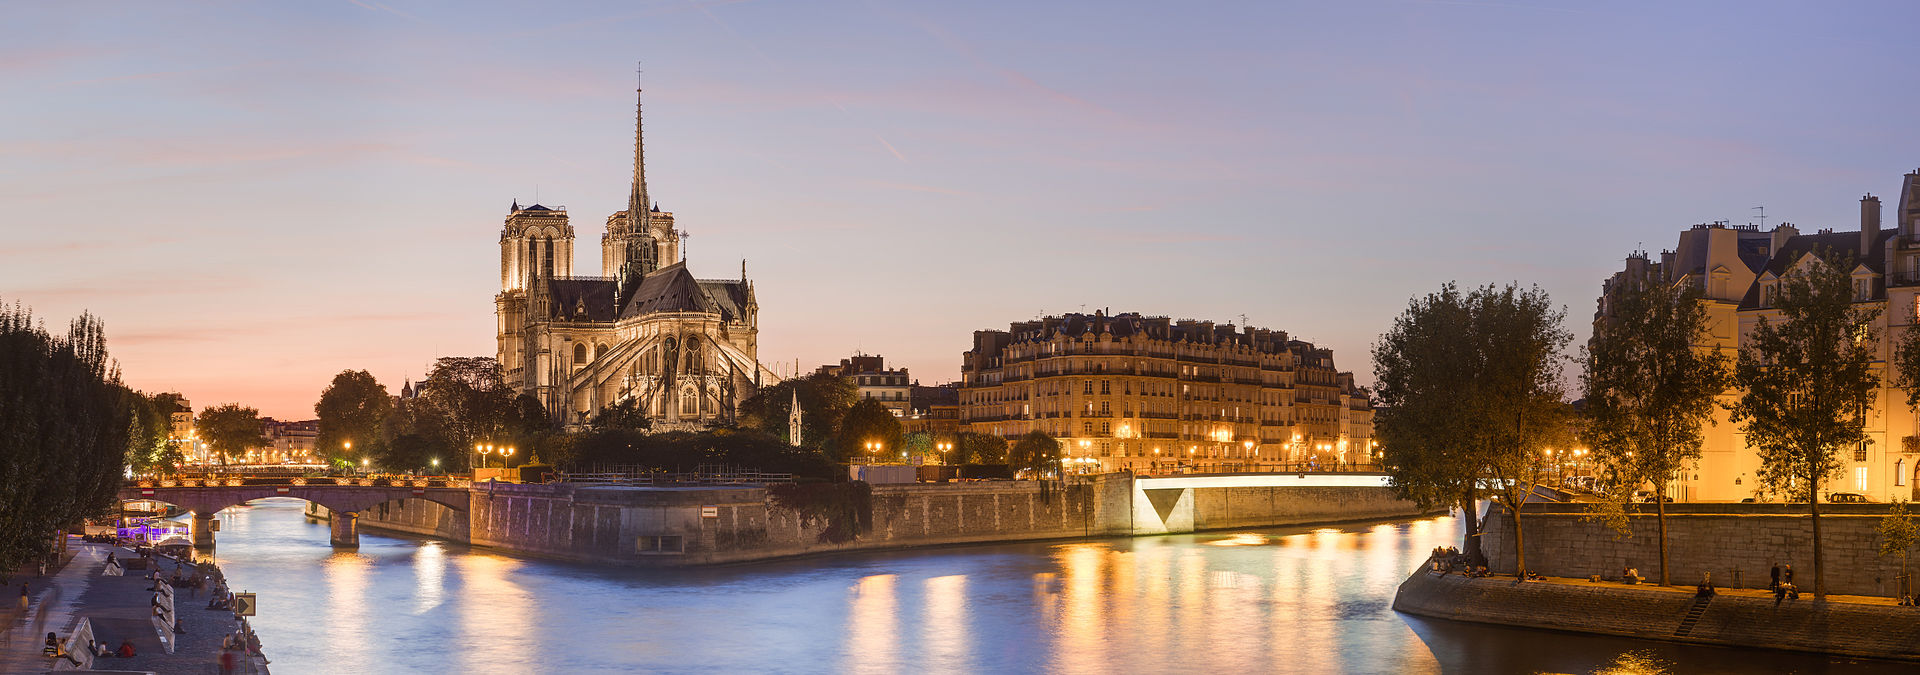 Visiter Notre-Dame de Paris avec son iPhone